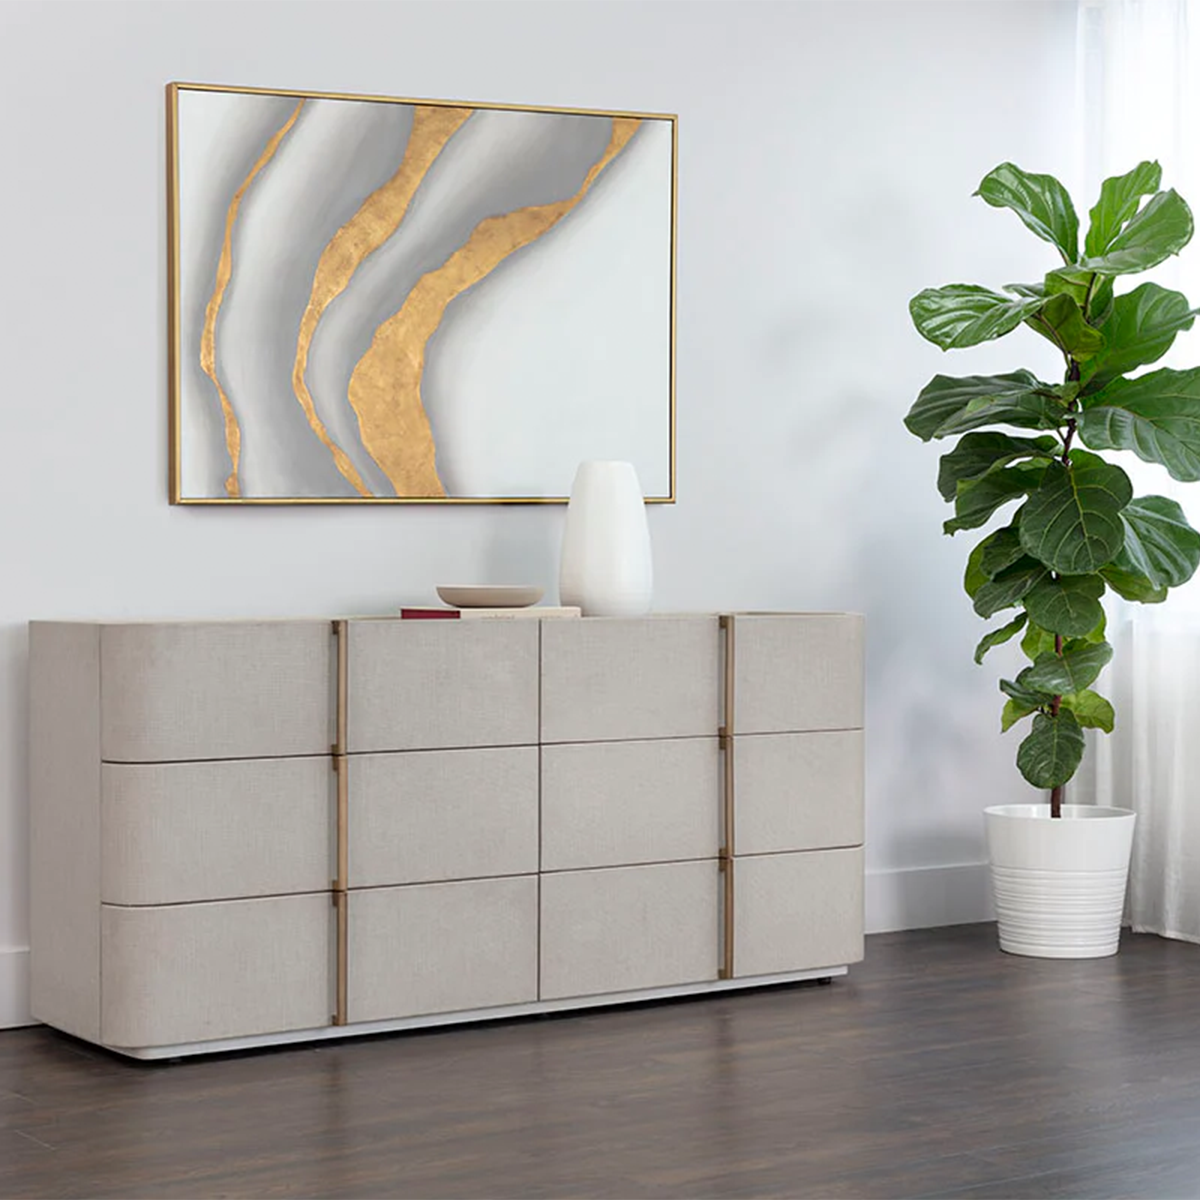 Jamille Dresser by Sunpan in a modern room